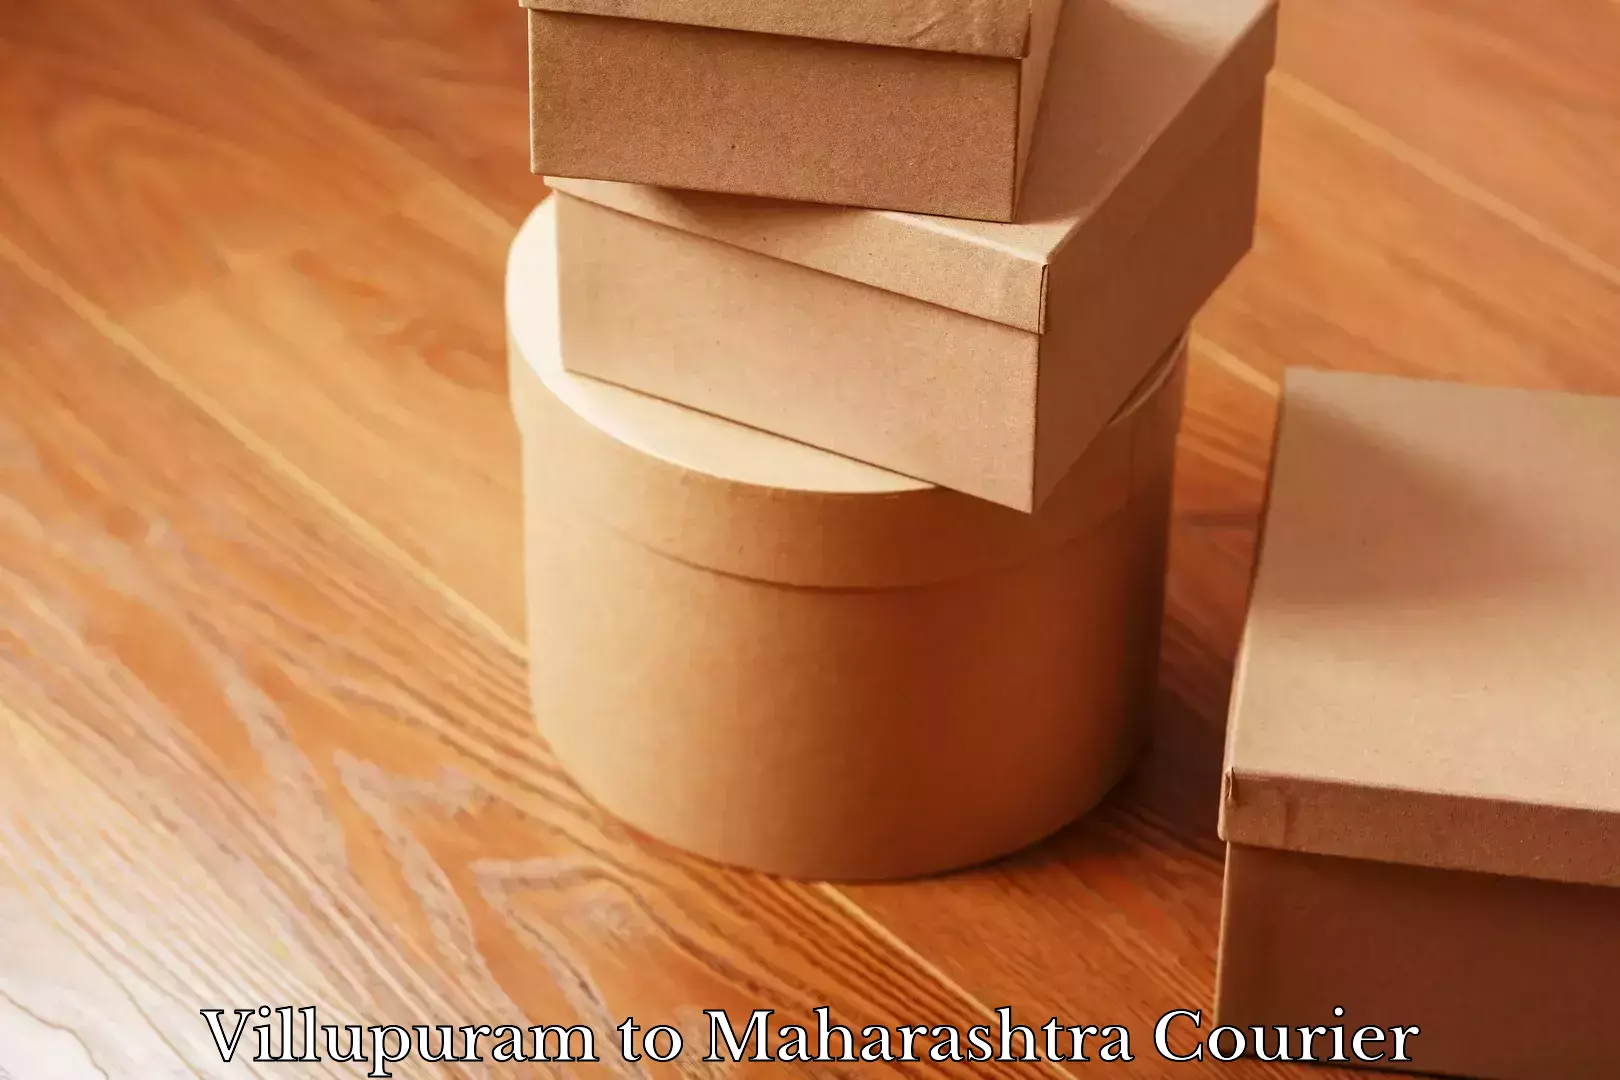 Reliable courier services Villupuram to Maharashtra